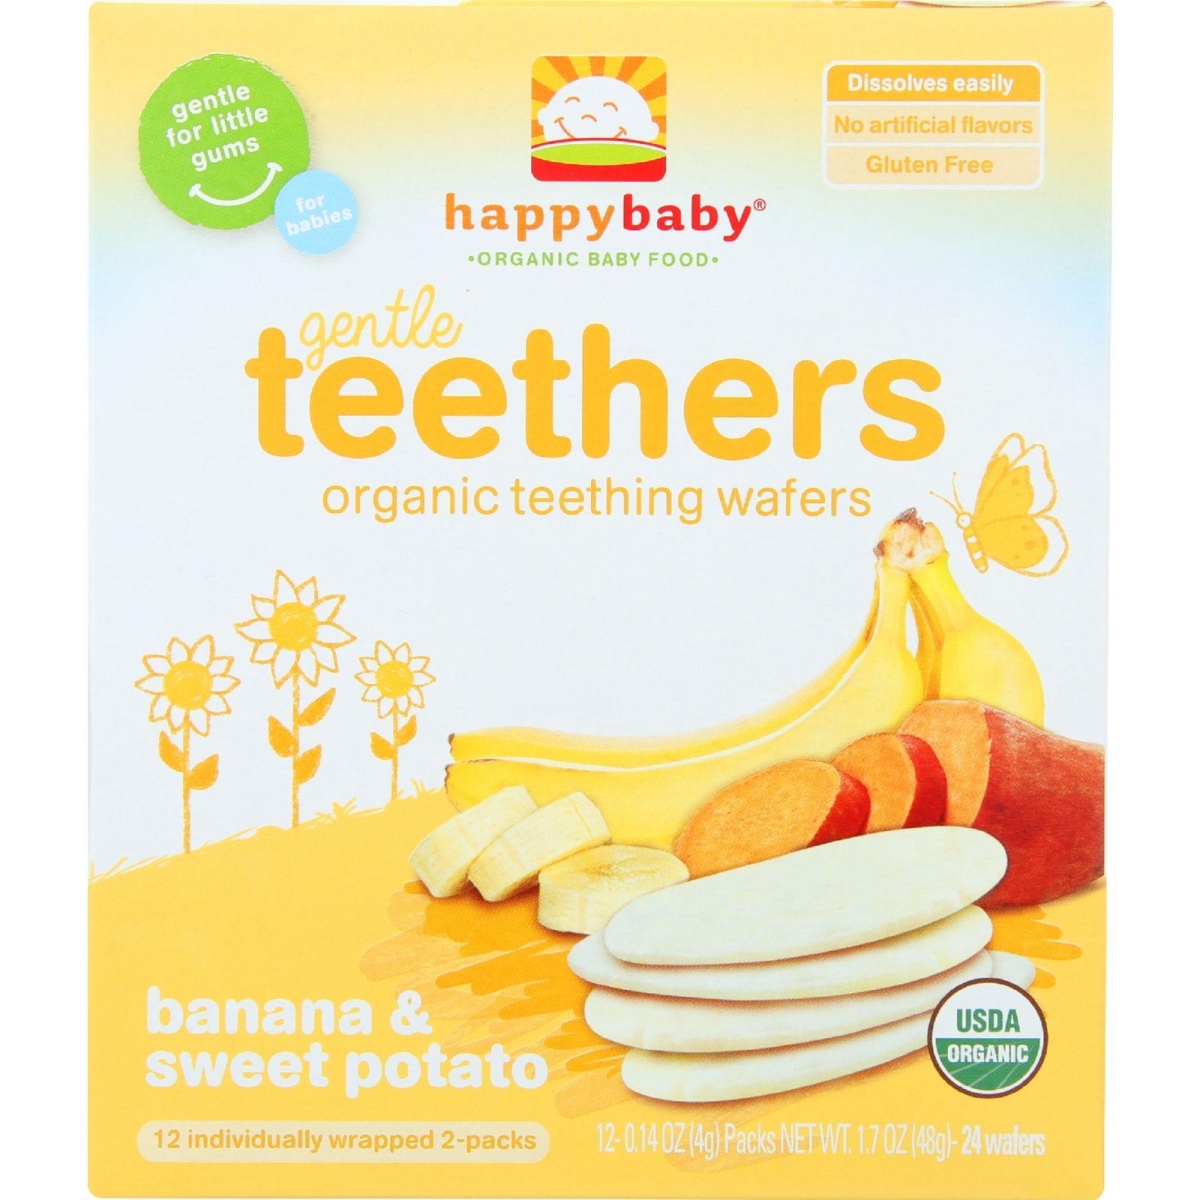 Hg1624253 1.7 Oz Organic Gentle Teethers - Banana & Sweet Potato - Case Of 6